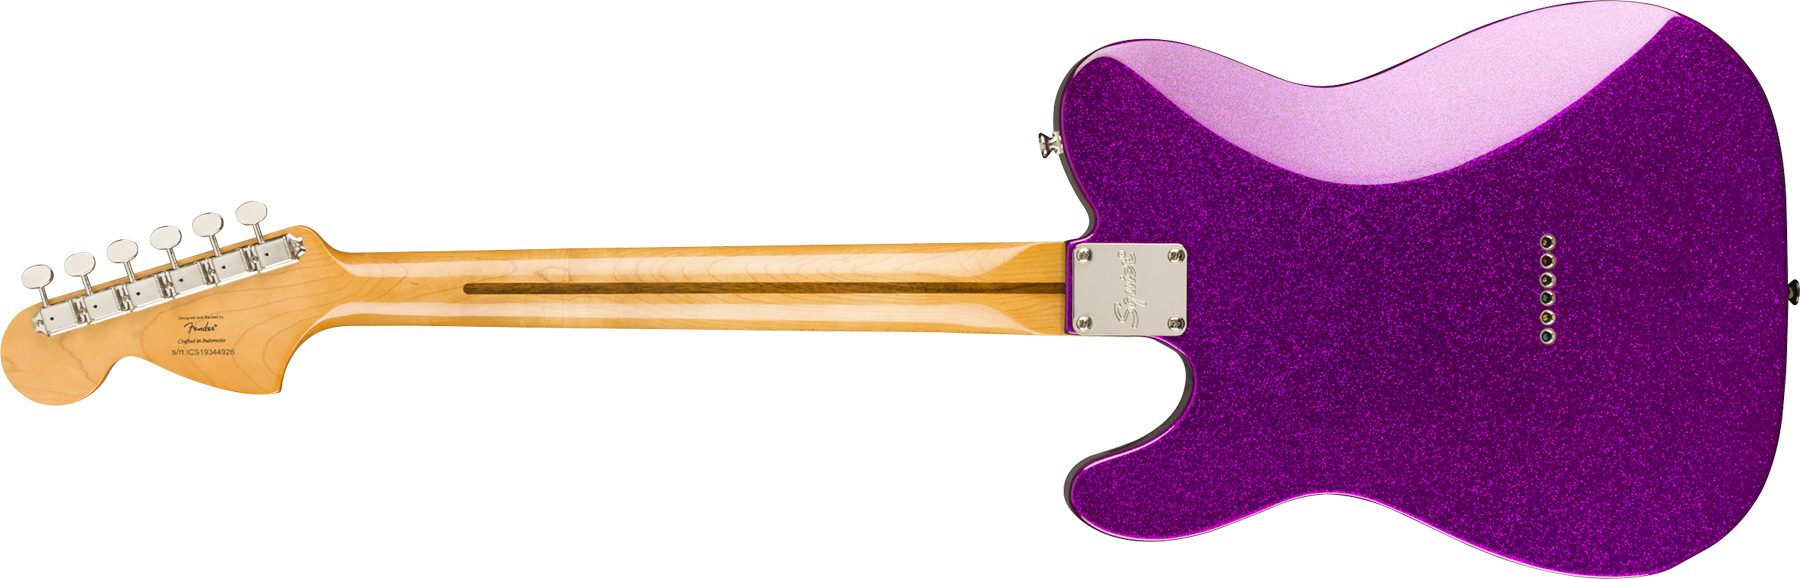 Squier Tele Deluxe Classic Vibe 70 Fsr Ltd 2020 Hh Htmn - Purple Sparkle - Guitarra eléctrica con forma de tel - Variation 1